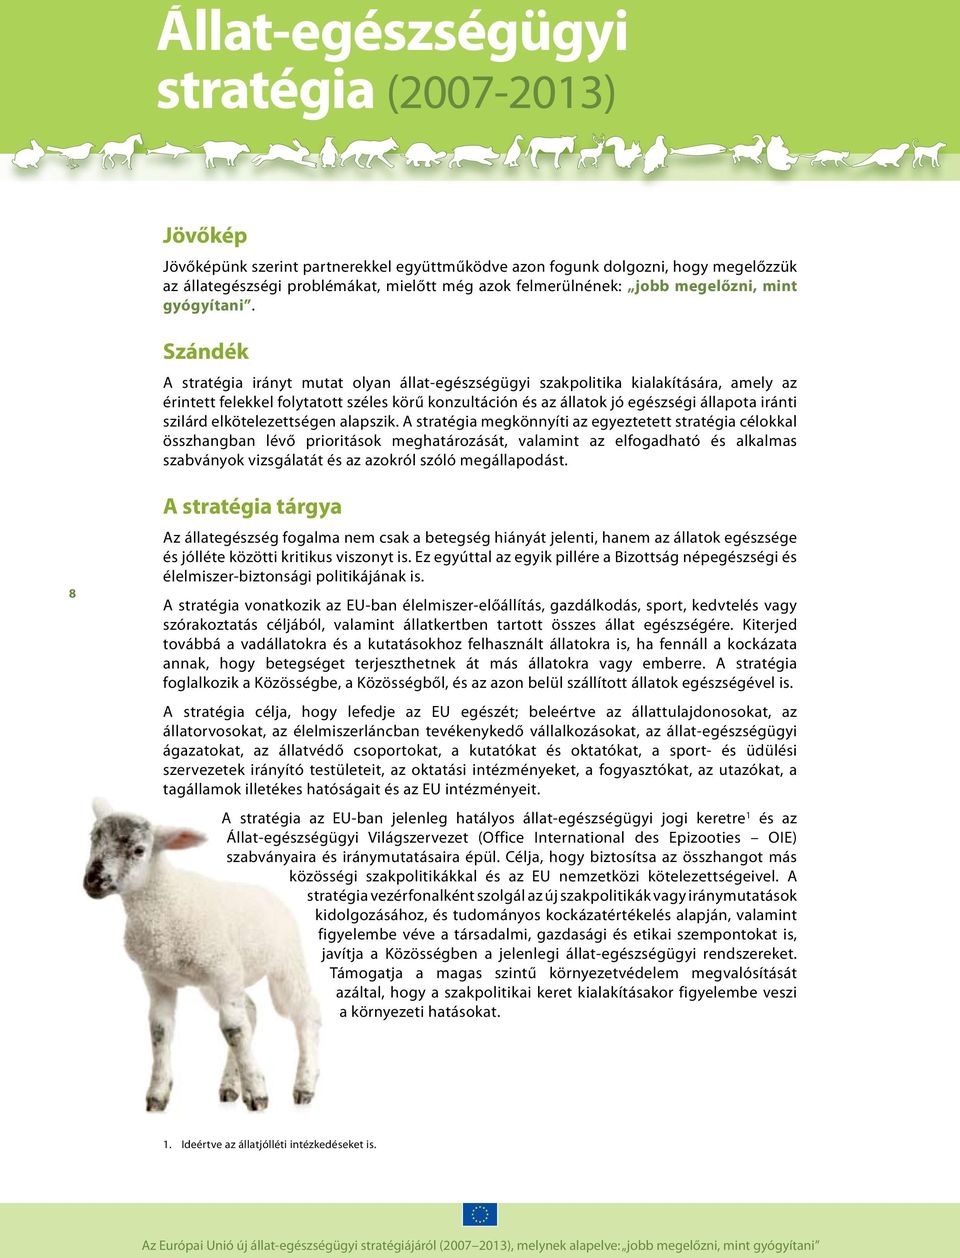 Szándék A stratégia irányt mutat olyan állat-egészségügyi szakpolitika kialakítására, amely az érintett felekkel folytatott széles körű konzultáción és az állatok jó egészségi állapota iránti szilárd